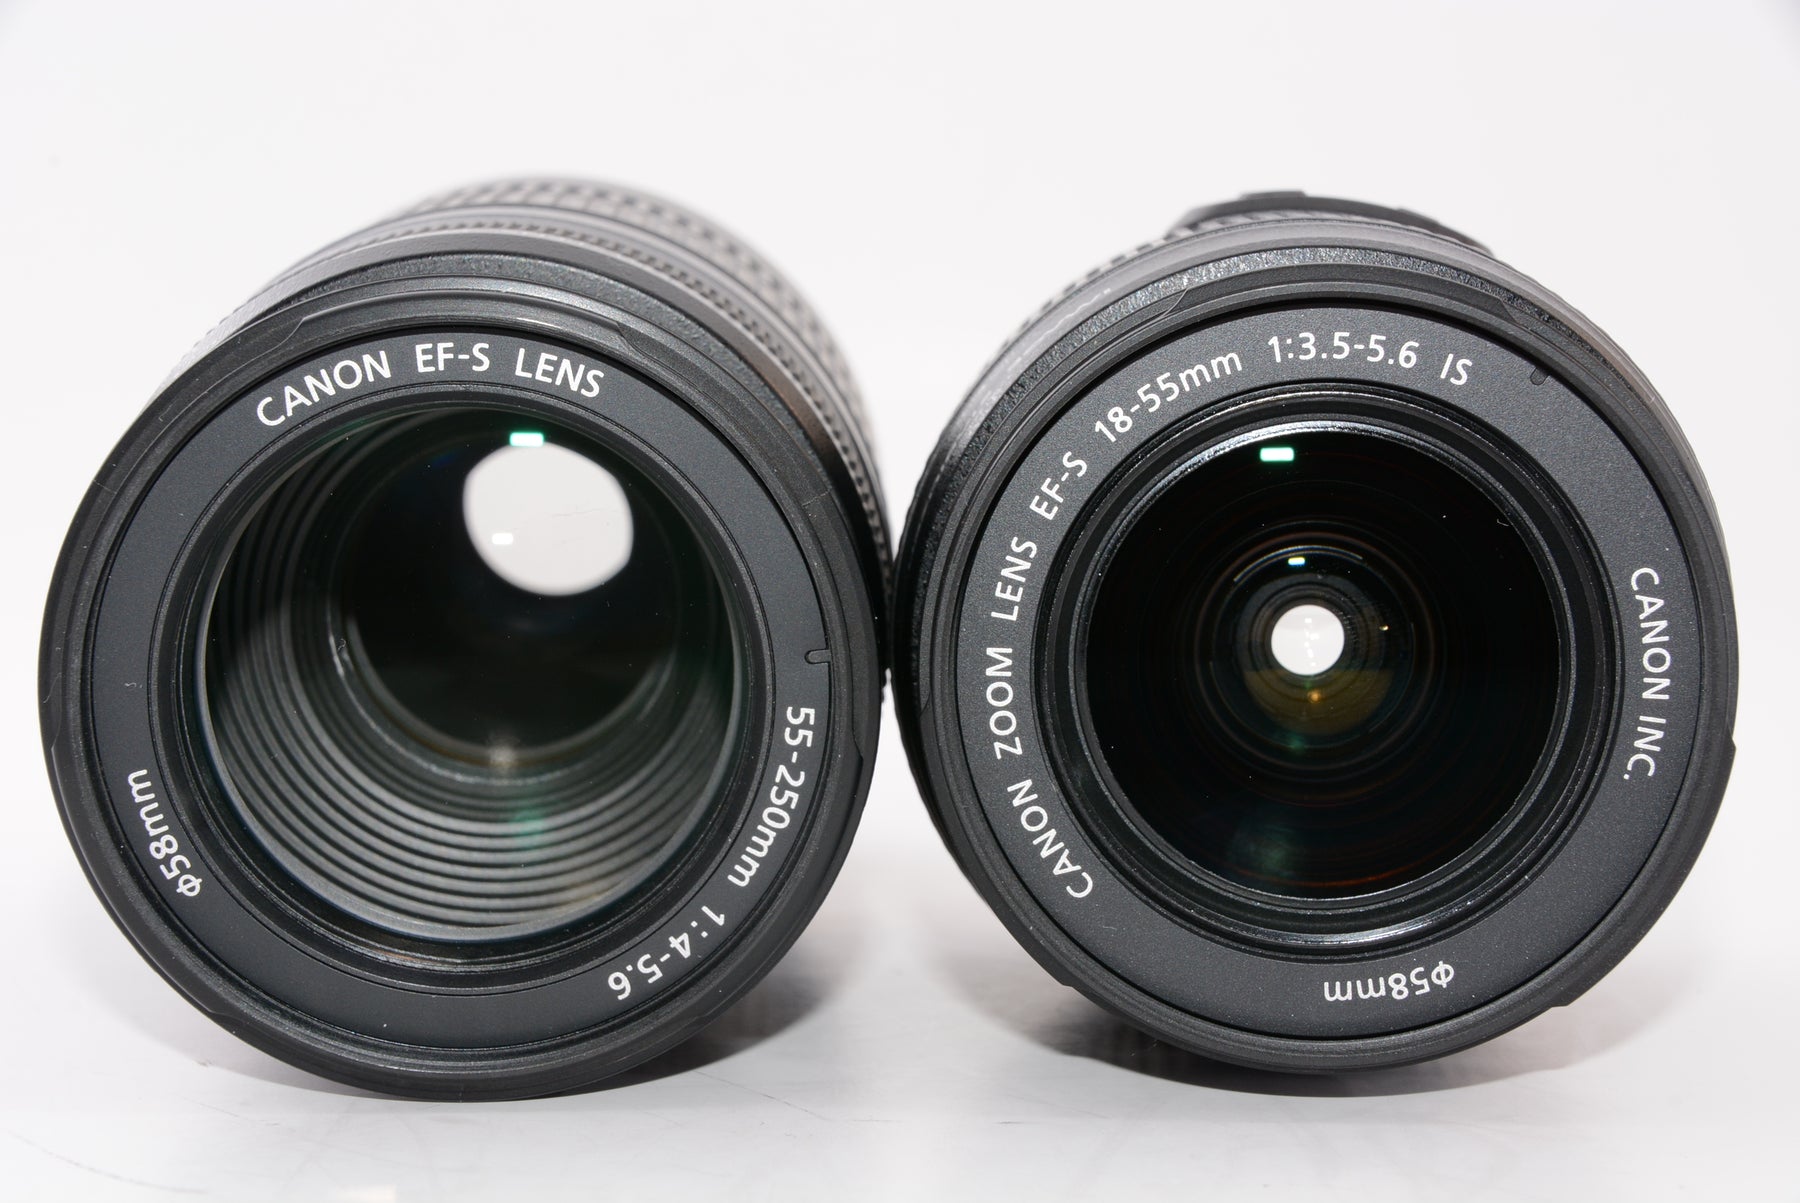 外観特上級】Canon デジタル一眼レフカメラ EOS Kiss X4 ダブルズーム